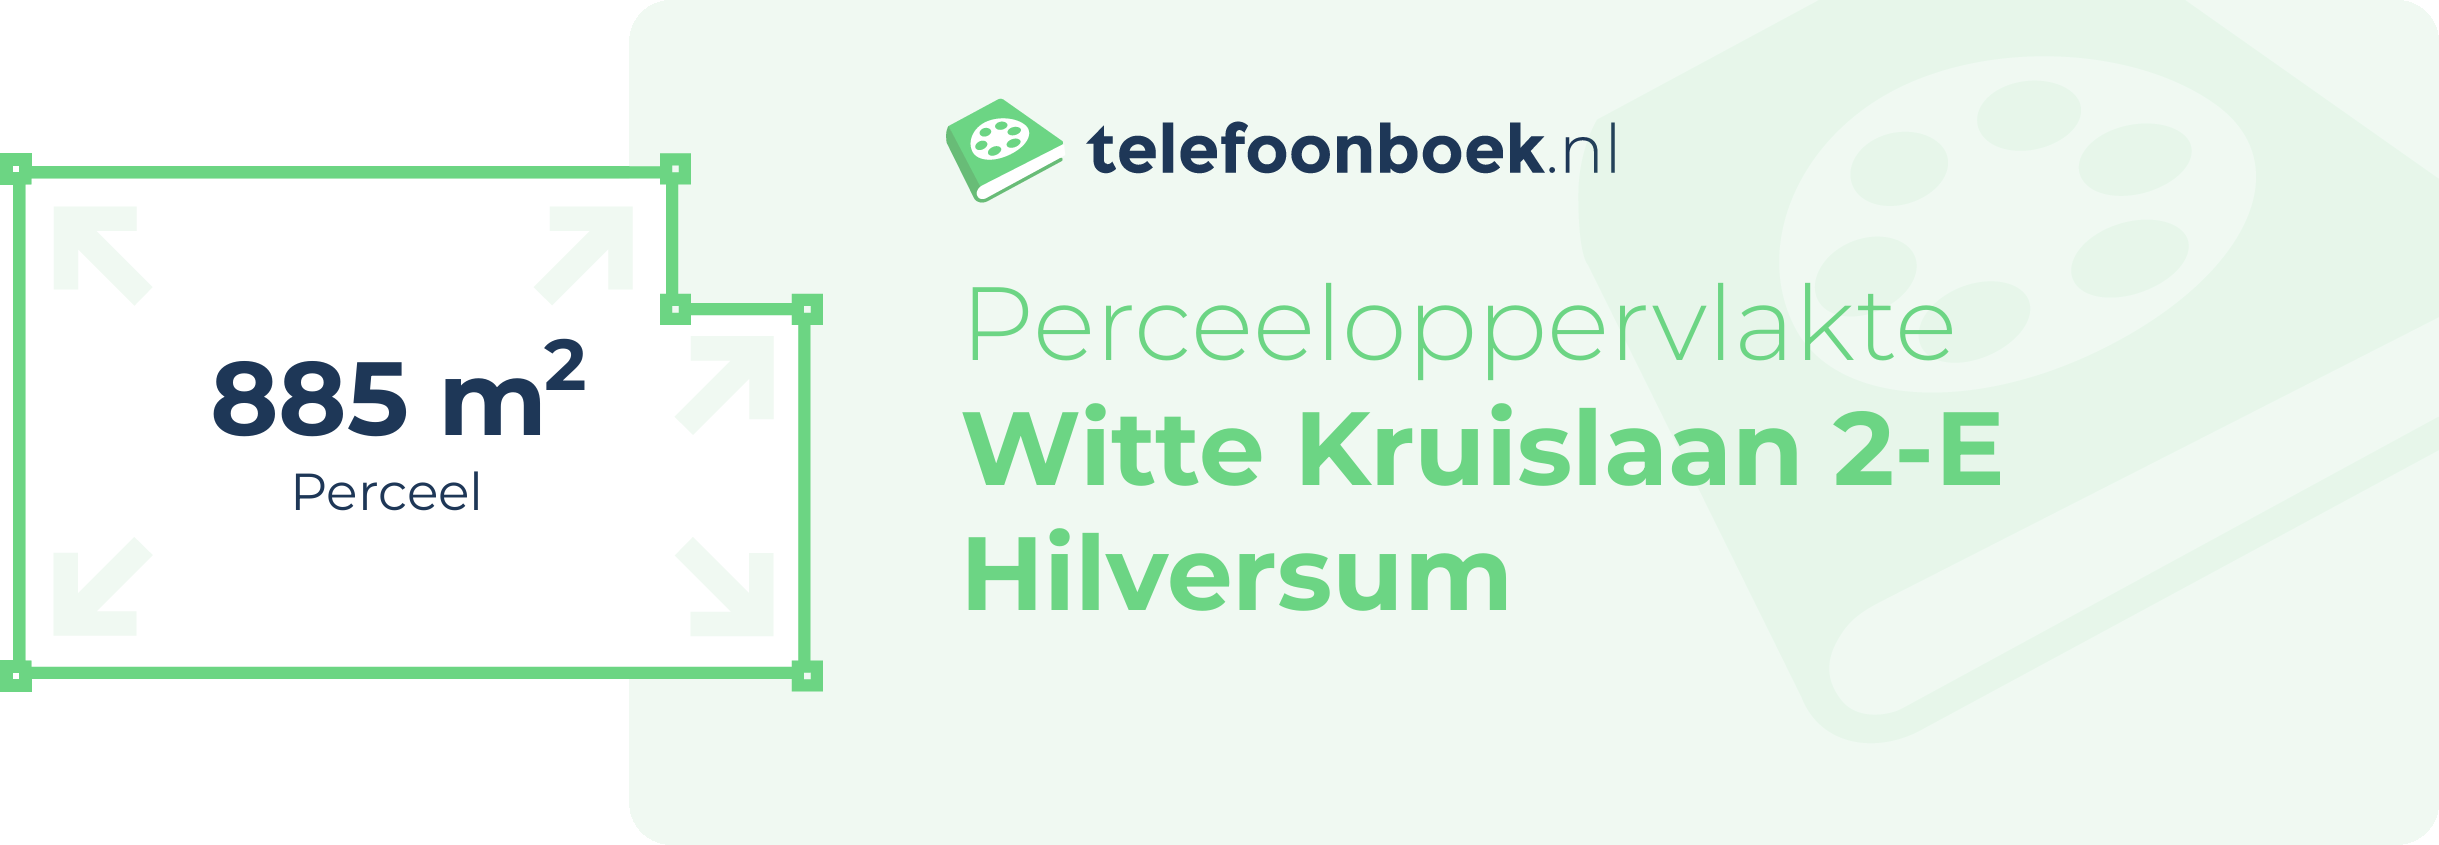 Perceeloppervlakte Witte Kruislaan 2-E Hilversum